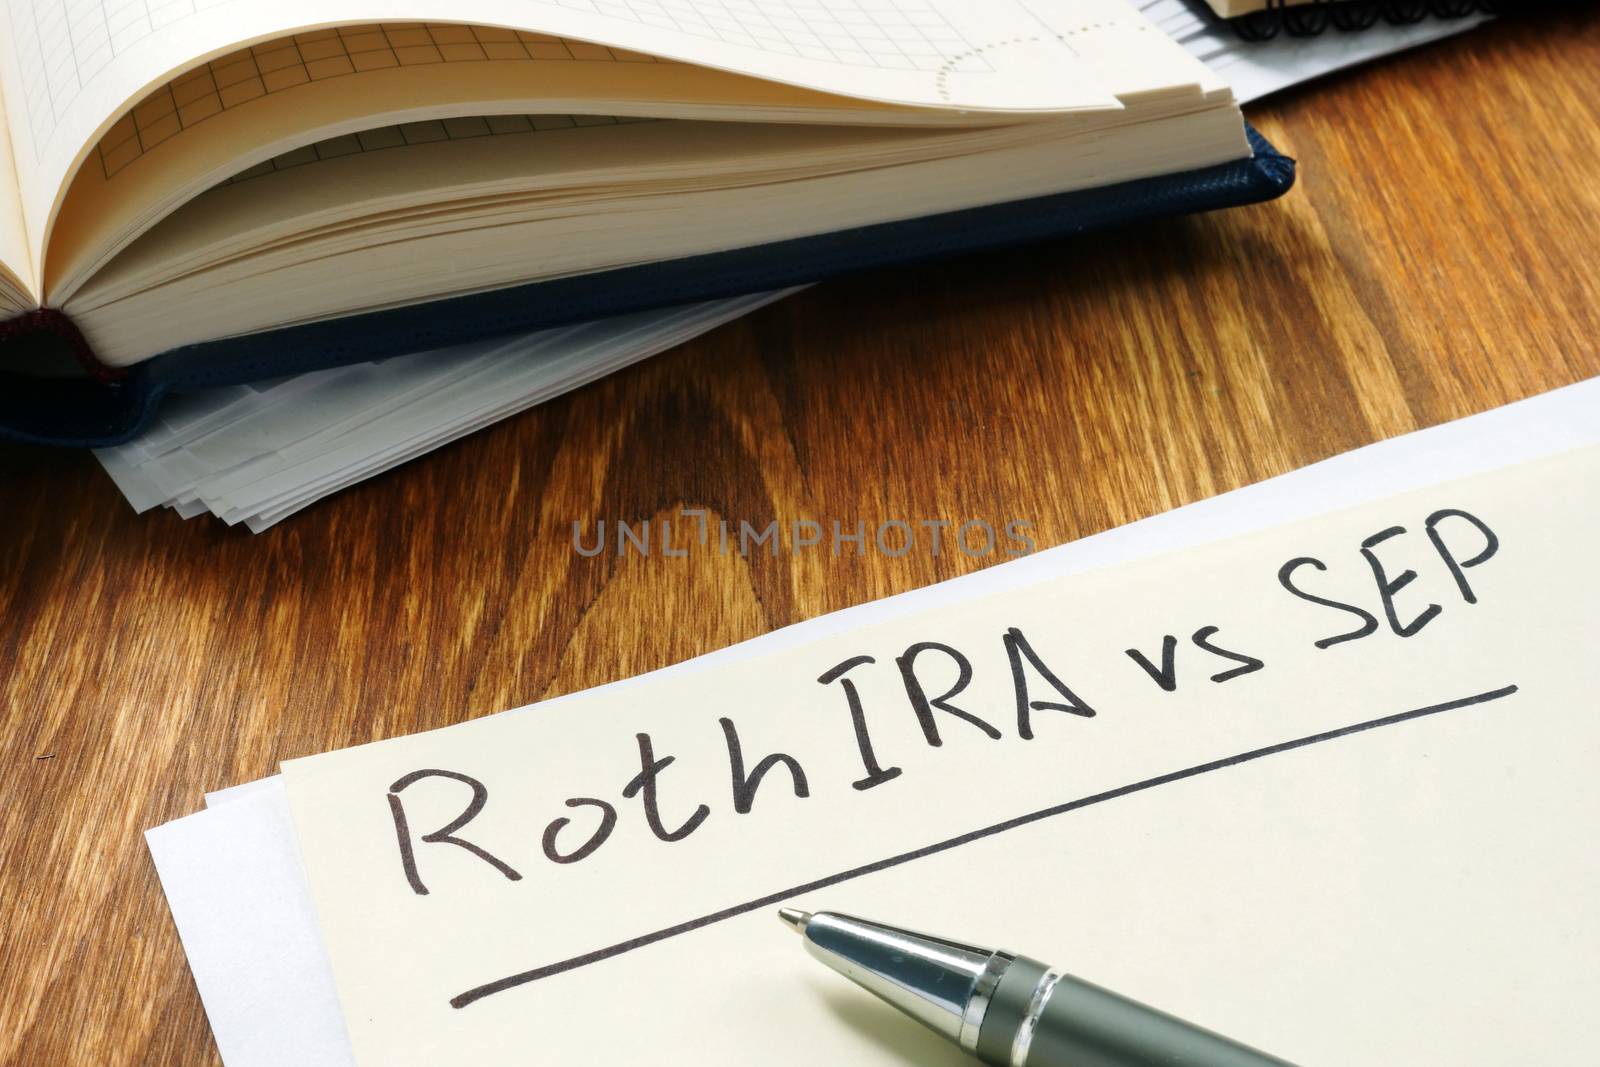 Roth IRA vs SEP handwritten on the yellow sheet.